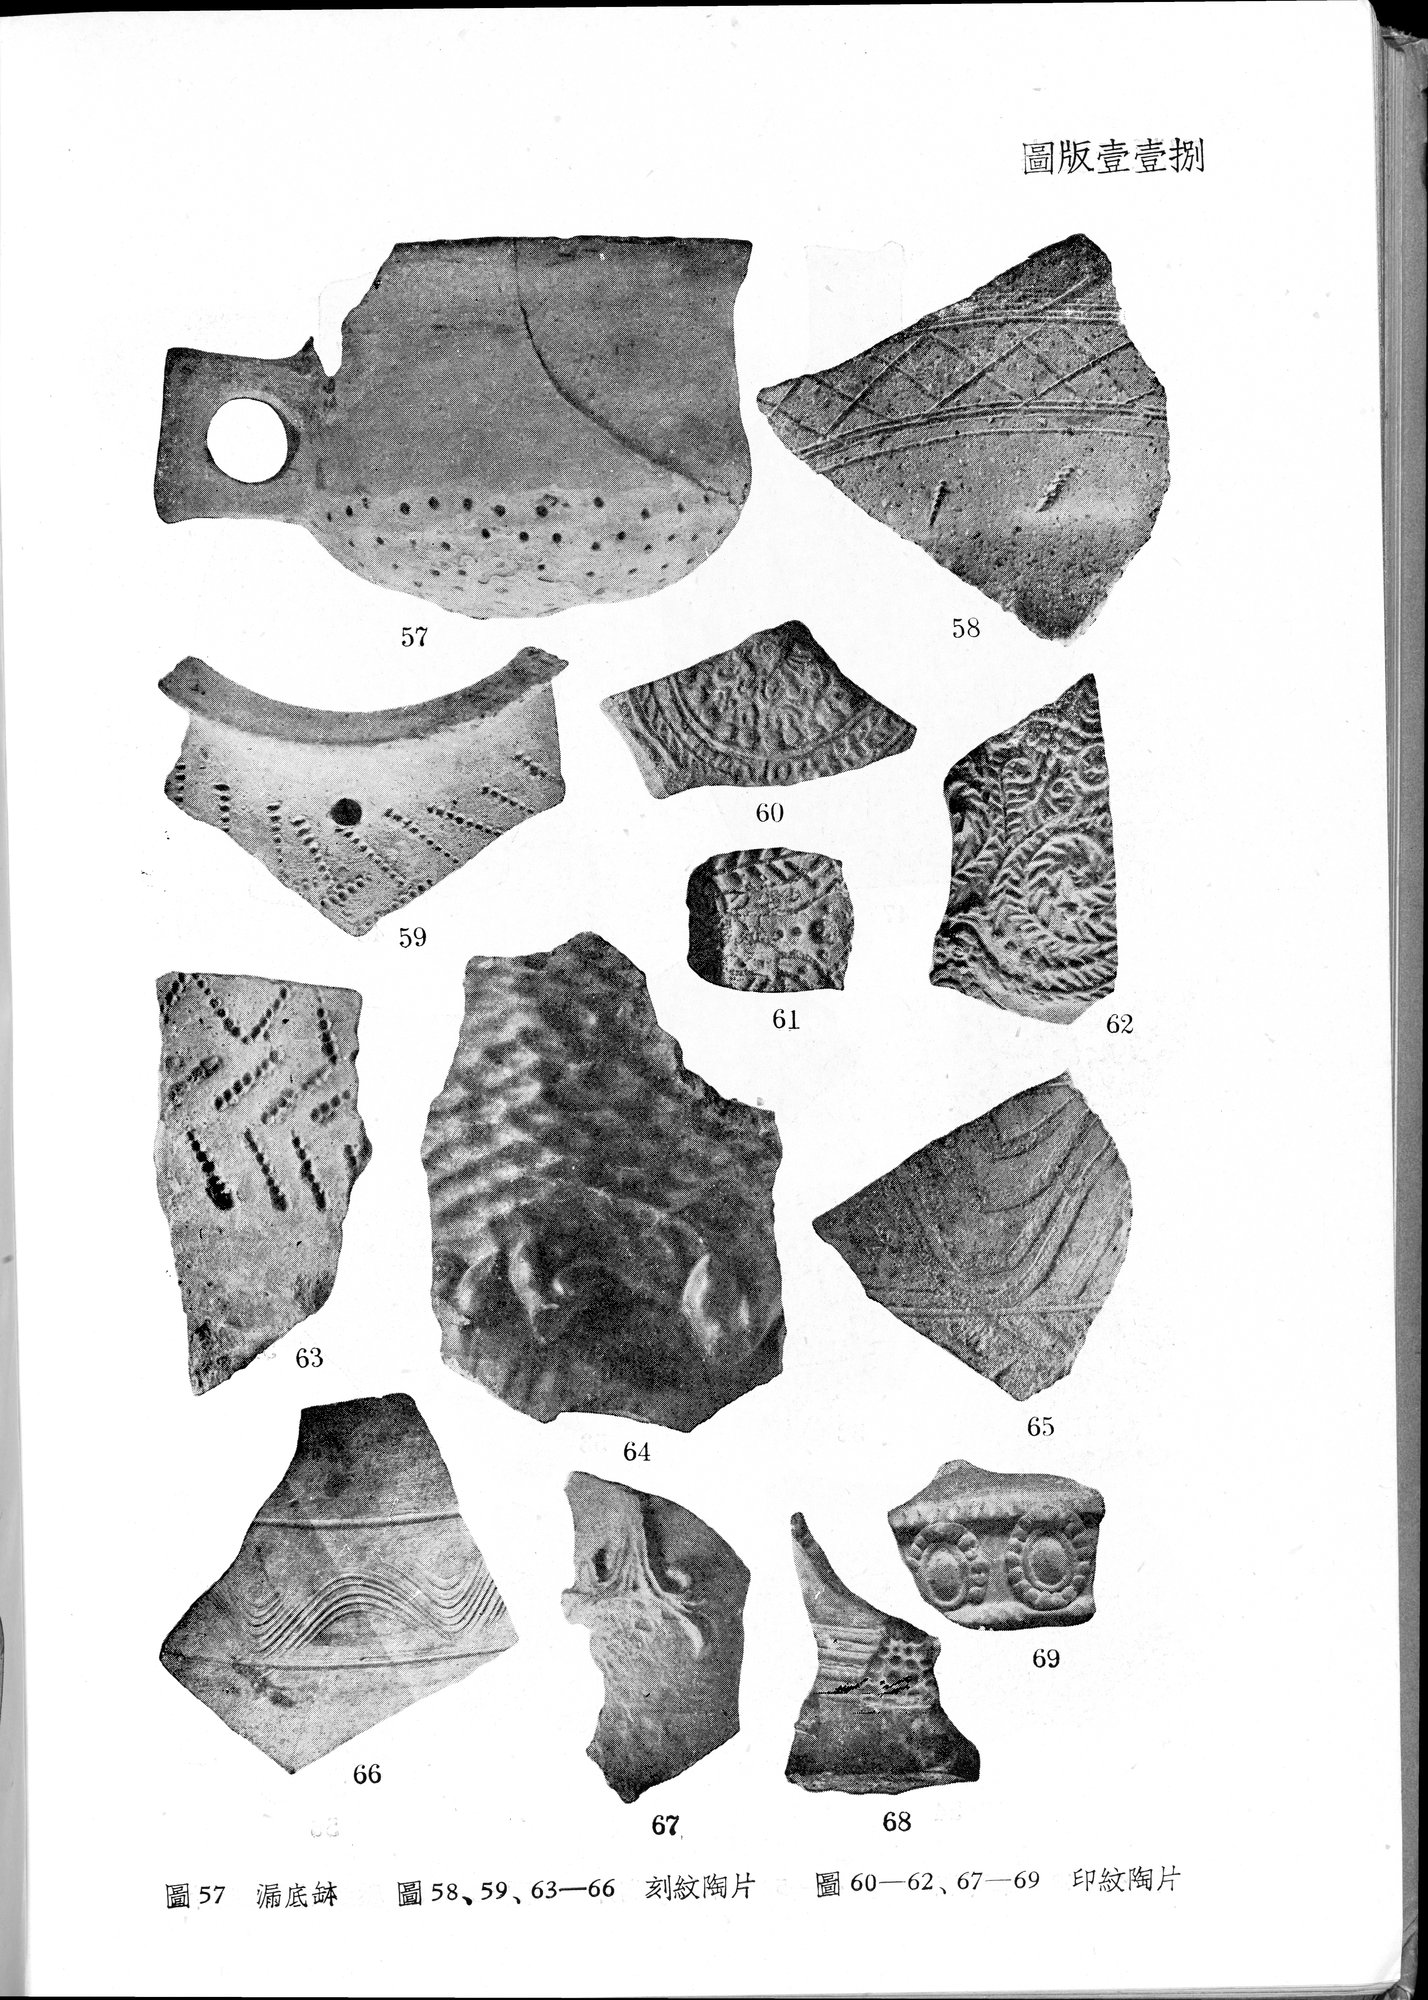 塔里木盆地考古記 : vol.1 / Page 362 (Grayscale High Resolution Image)